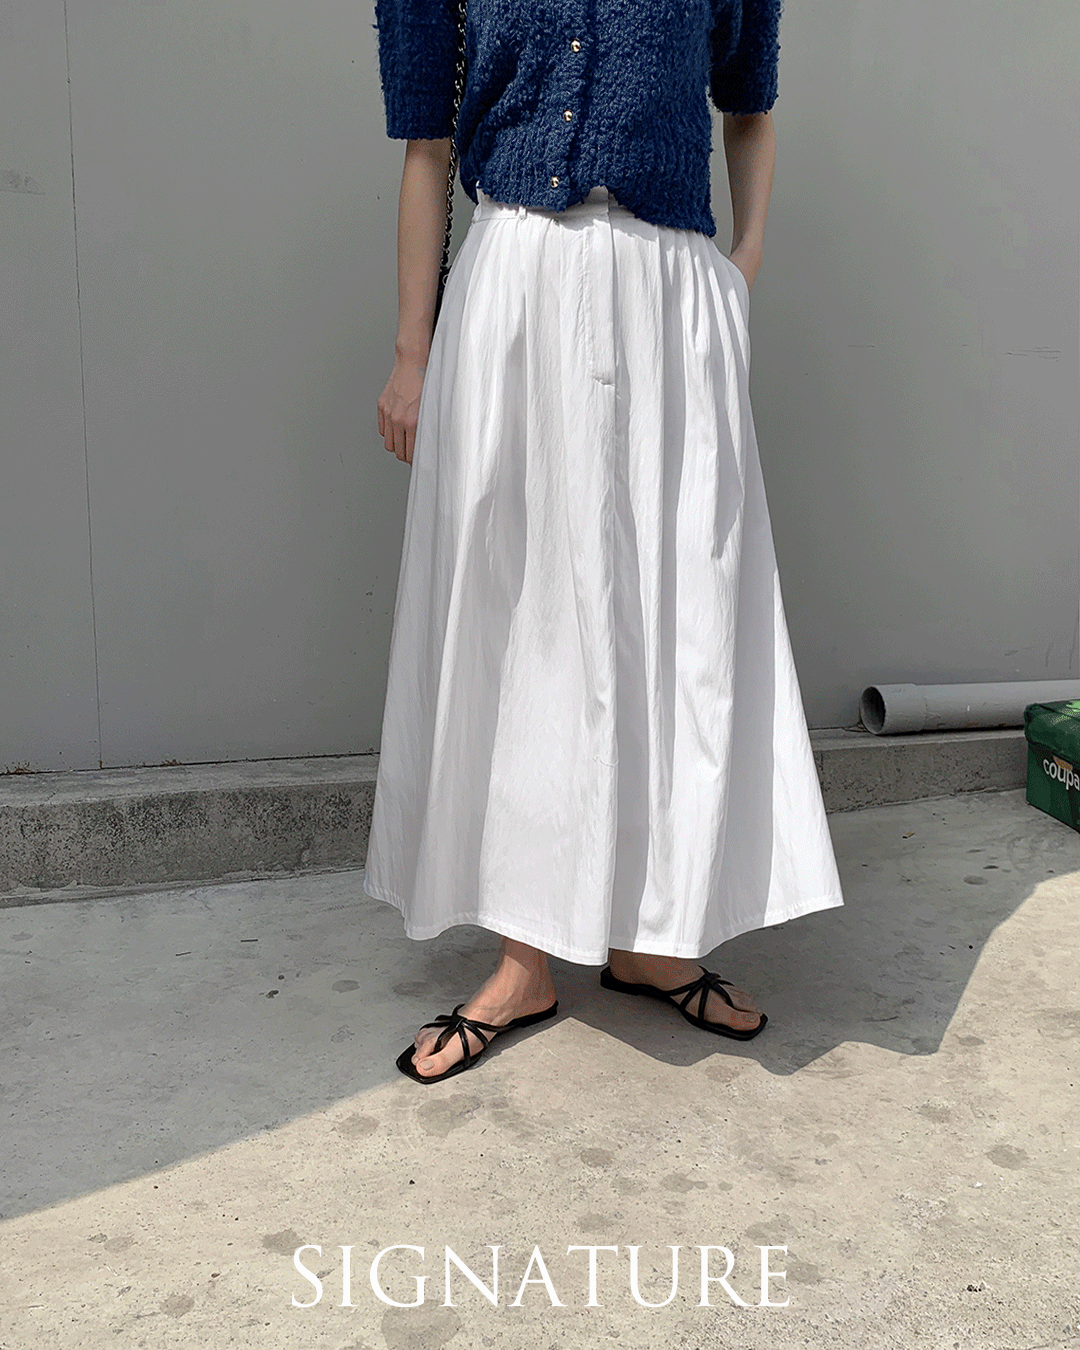 Signature white skirt